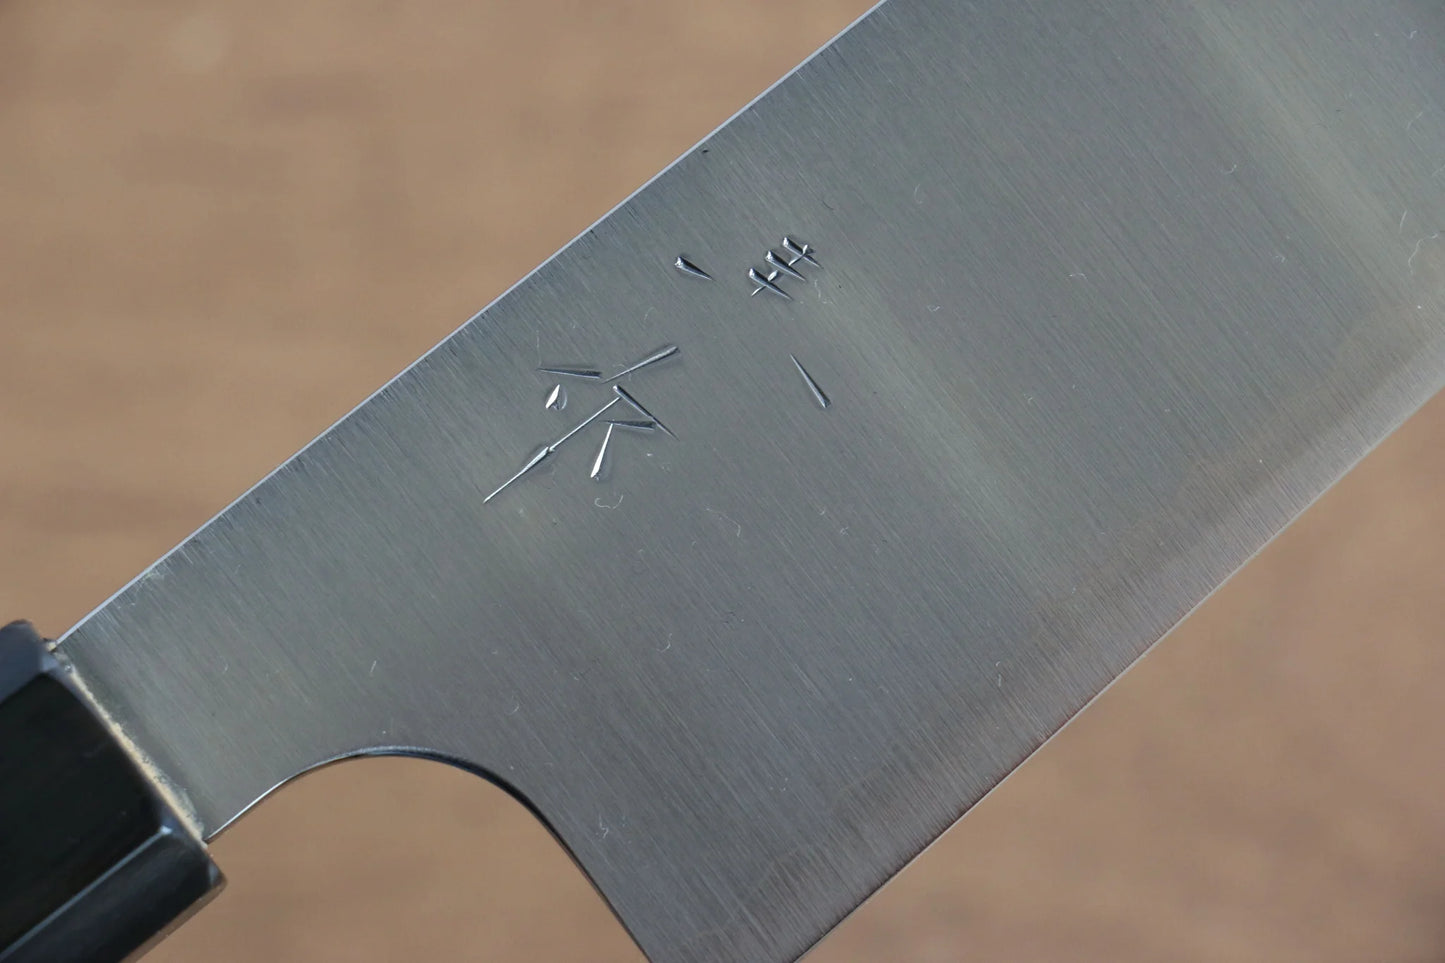 Thương hiệu Kei Kobayashi thép SG2 Dao đa năng Bunka 170MM chuôi dao gỗ Wenge